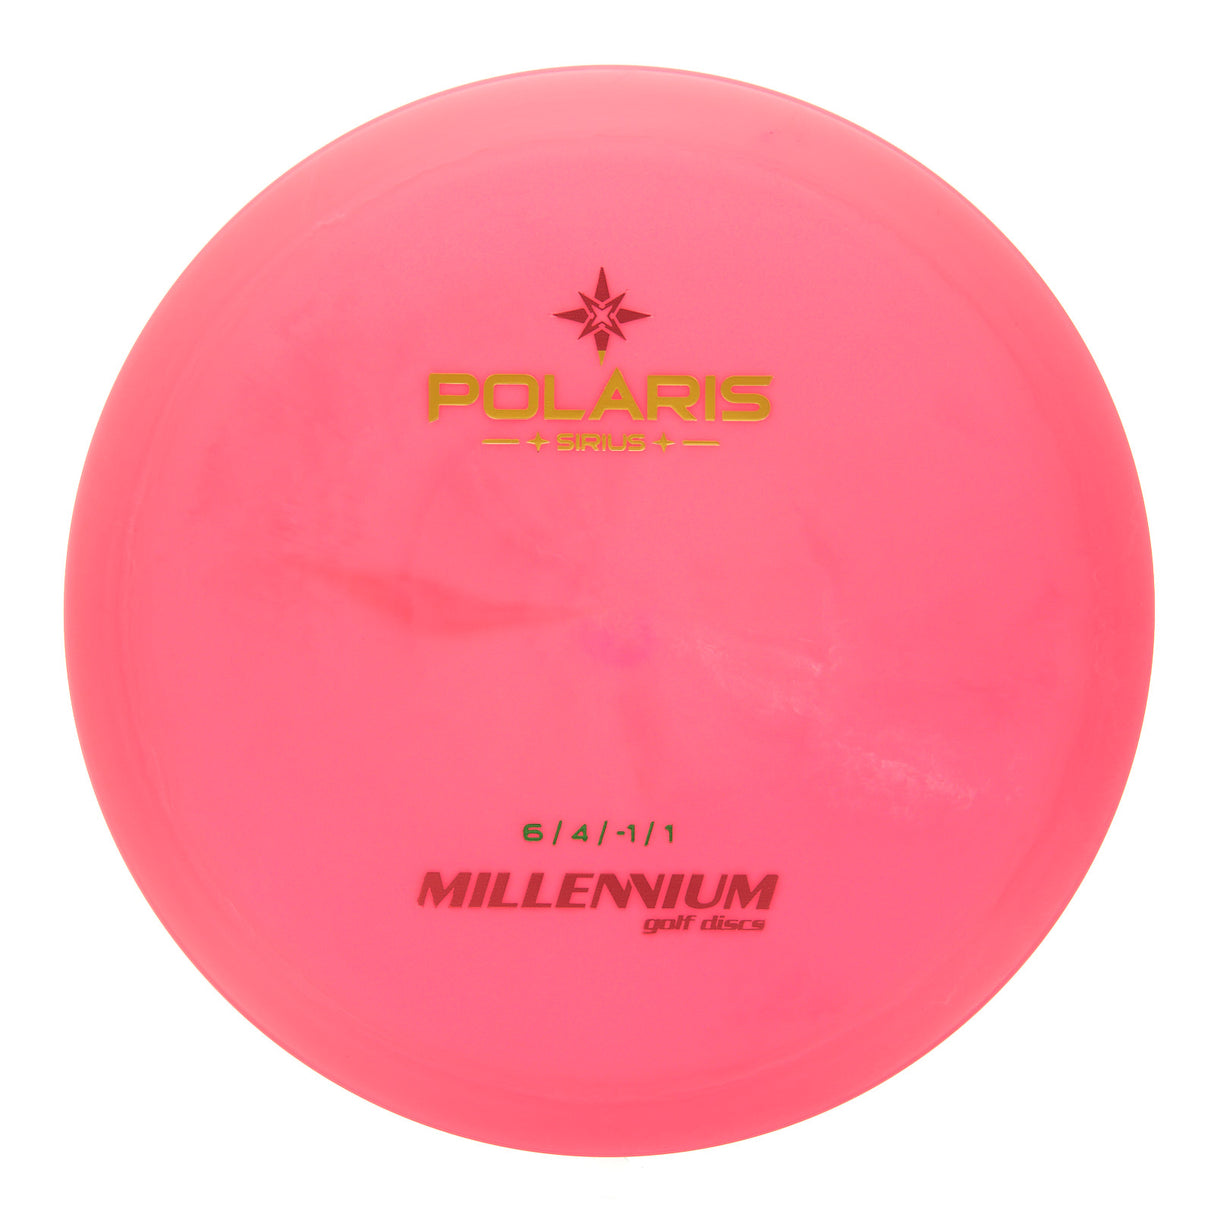 Millennium Polaris LS - Sirius 157g | Style 0001